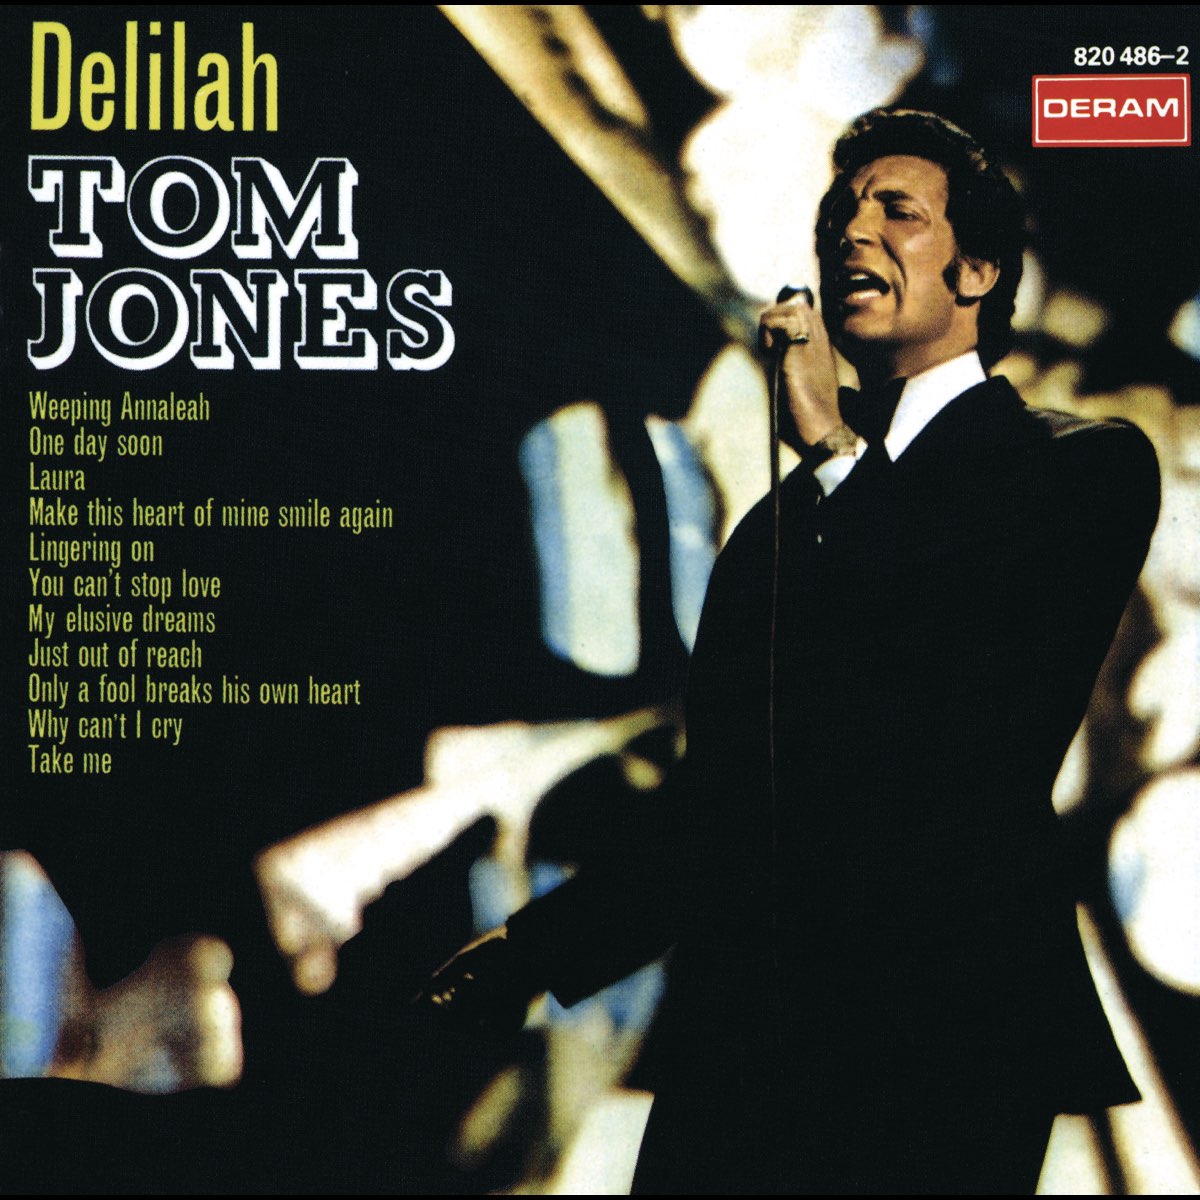 Delilah - Album di Tom Jones - Apple Music